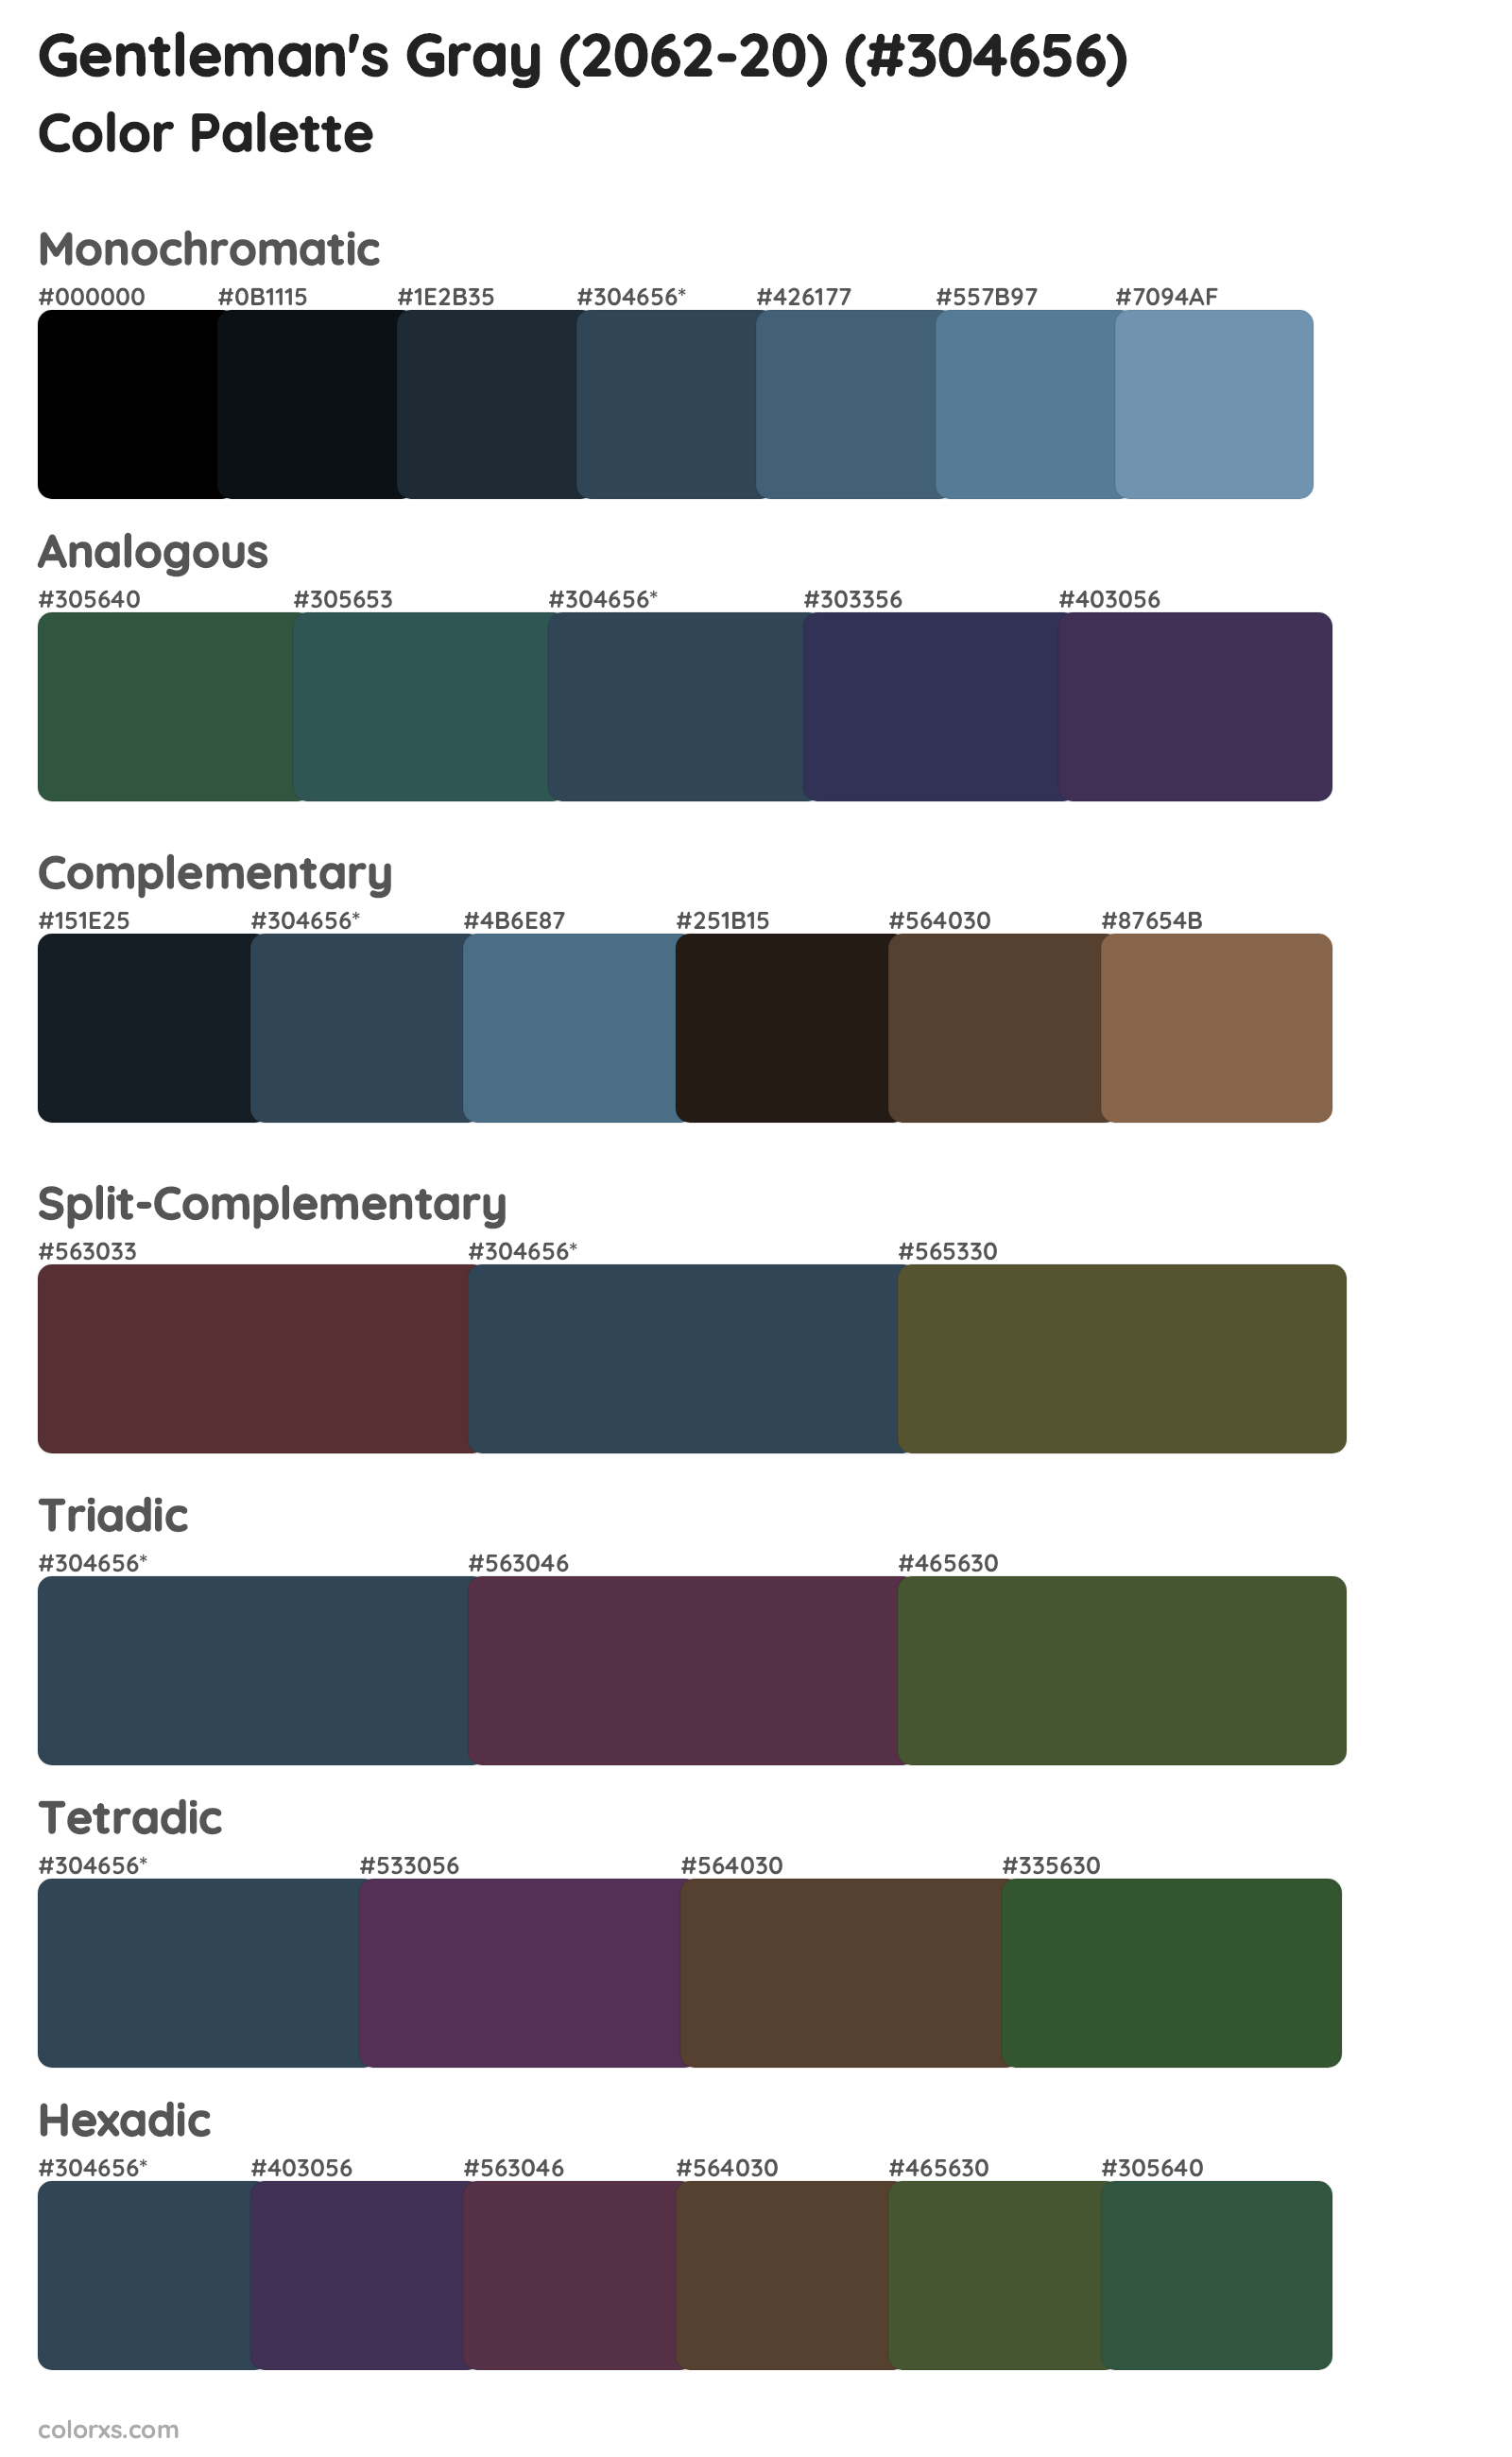 Gentleman's Gray (2062-20) Color Scheme Palettes